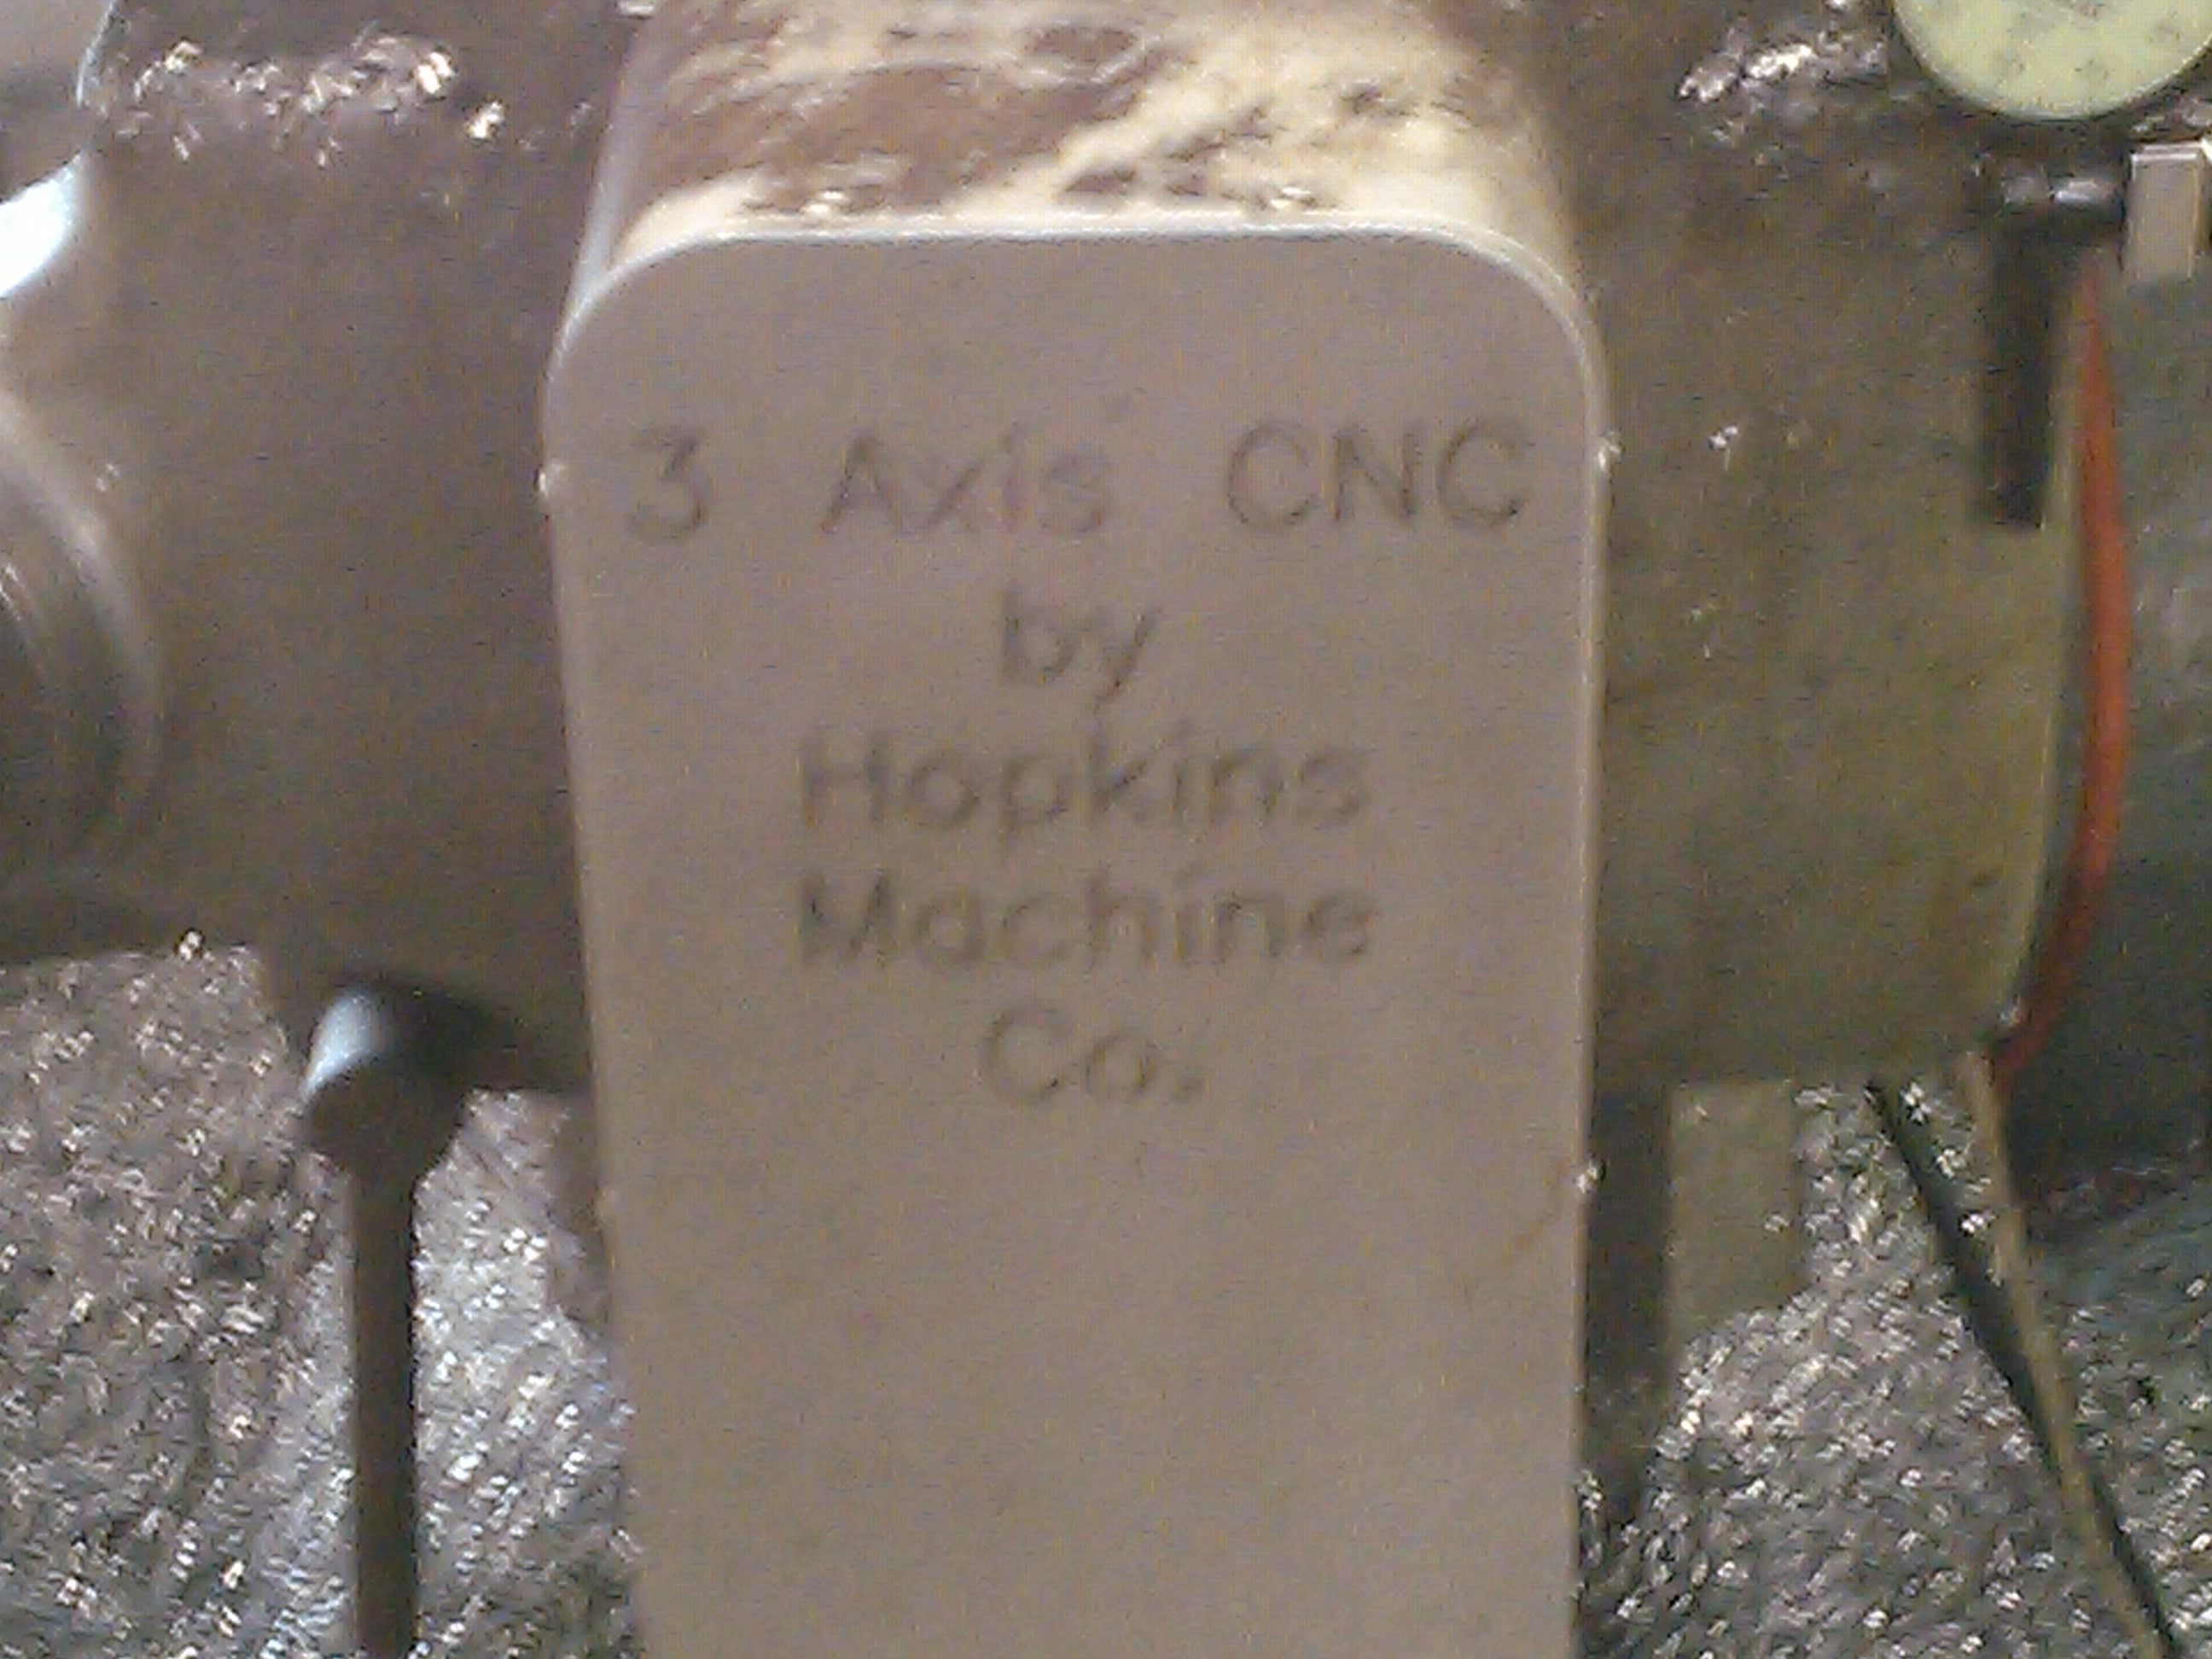 Hopkins Machine Company